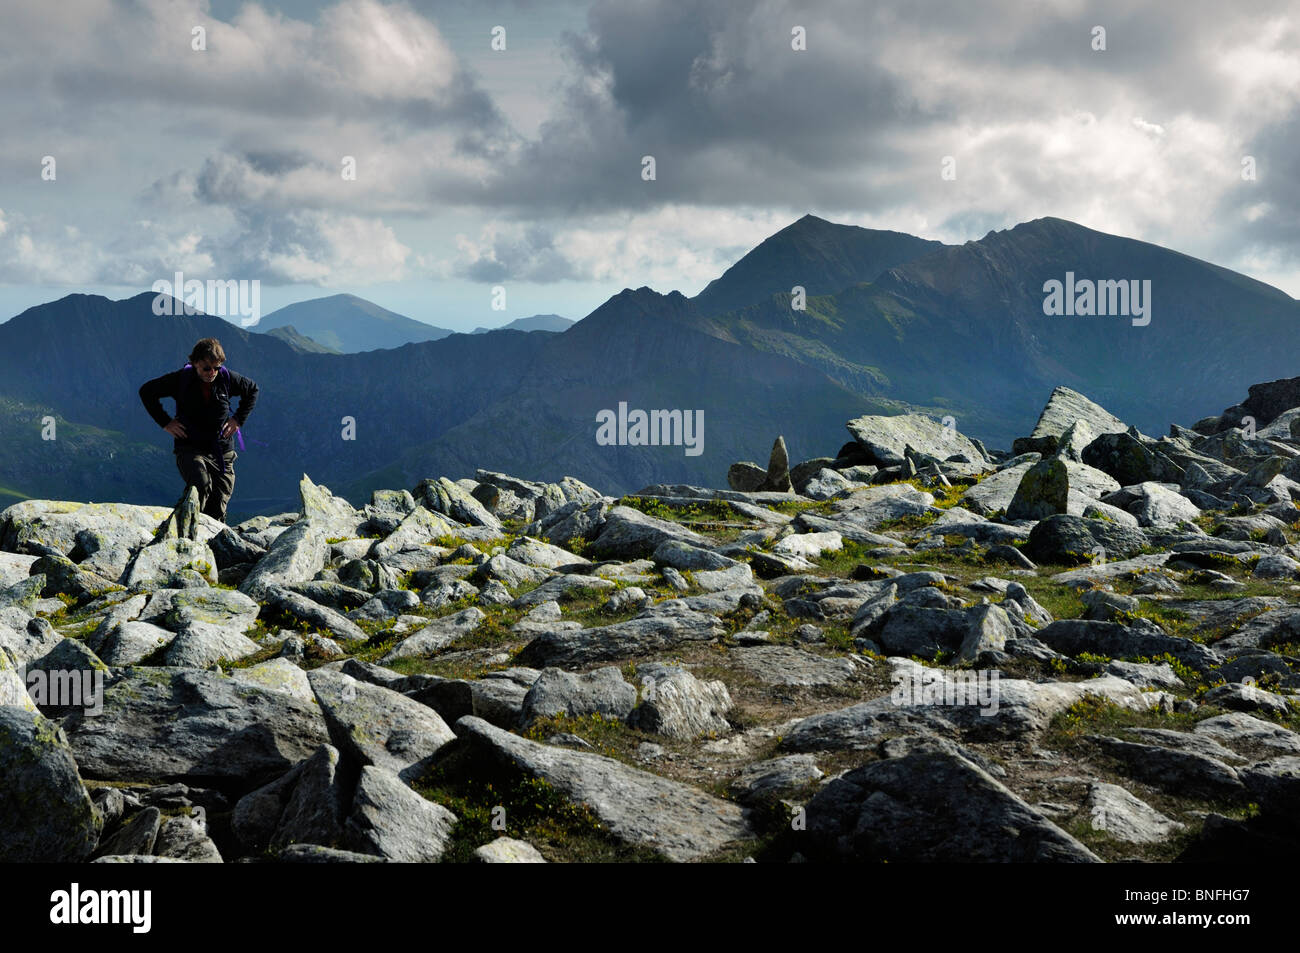 Mittleren Alters Wanderer erreichen die Spitze den Glyder Fach/Fawr Grat mit den Gipfeln des Mount Snowdon Bereichs im Hintergrund. Stockfoto